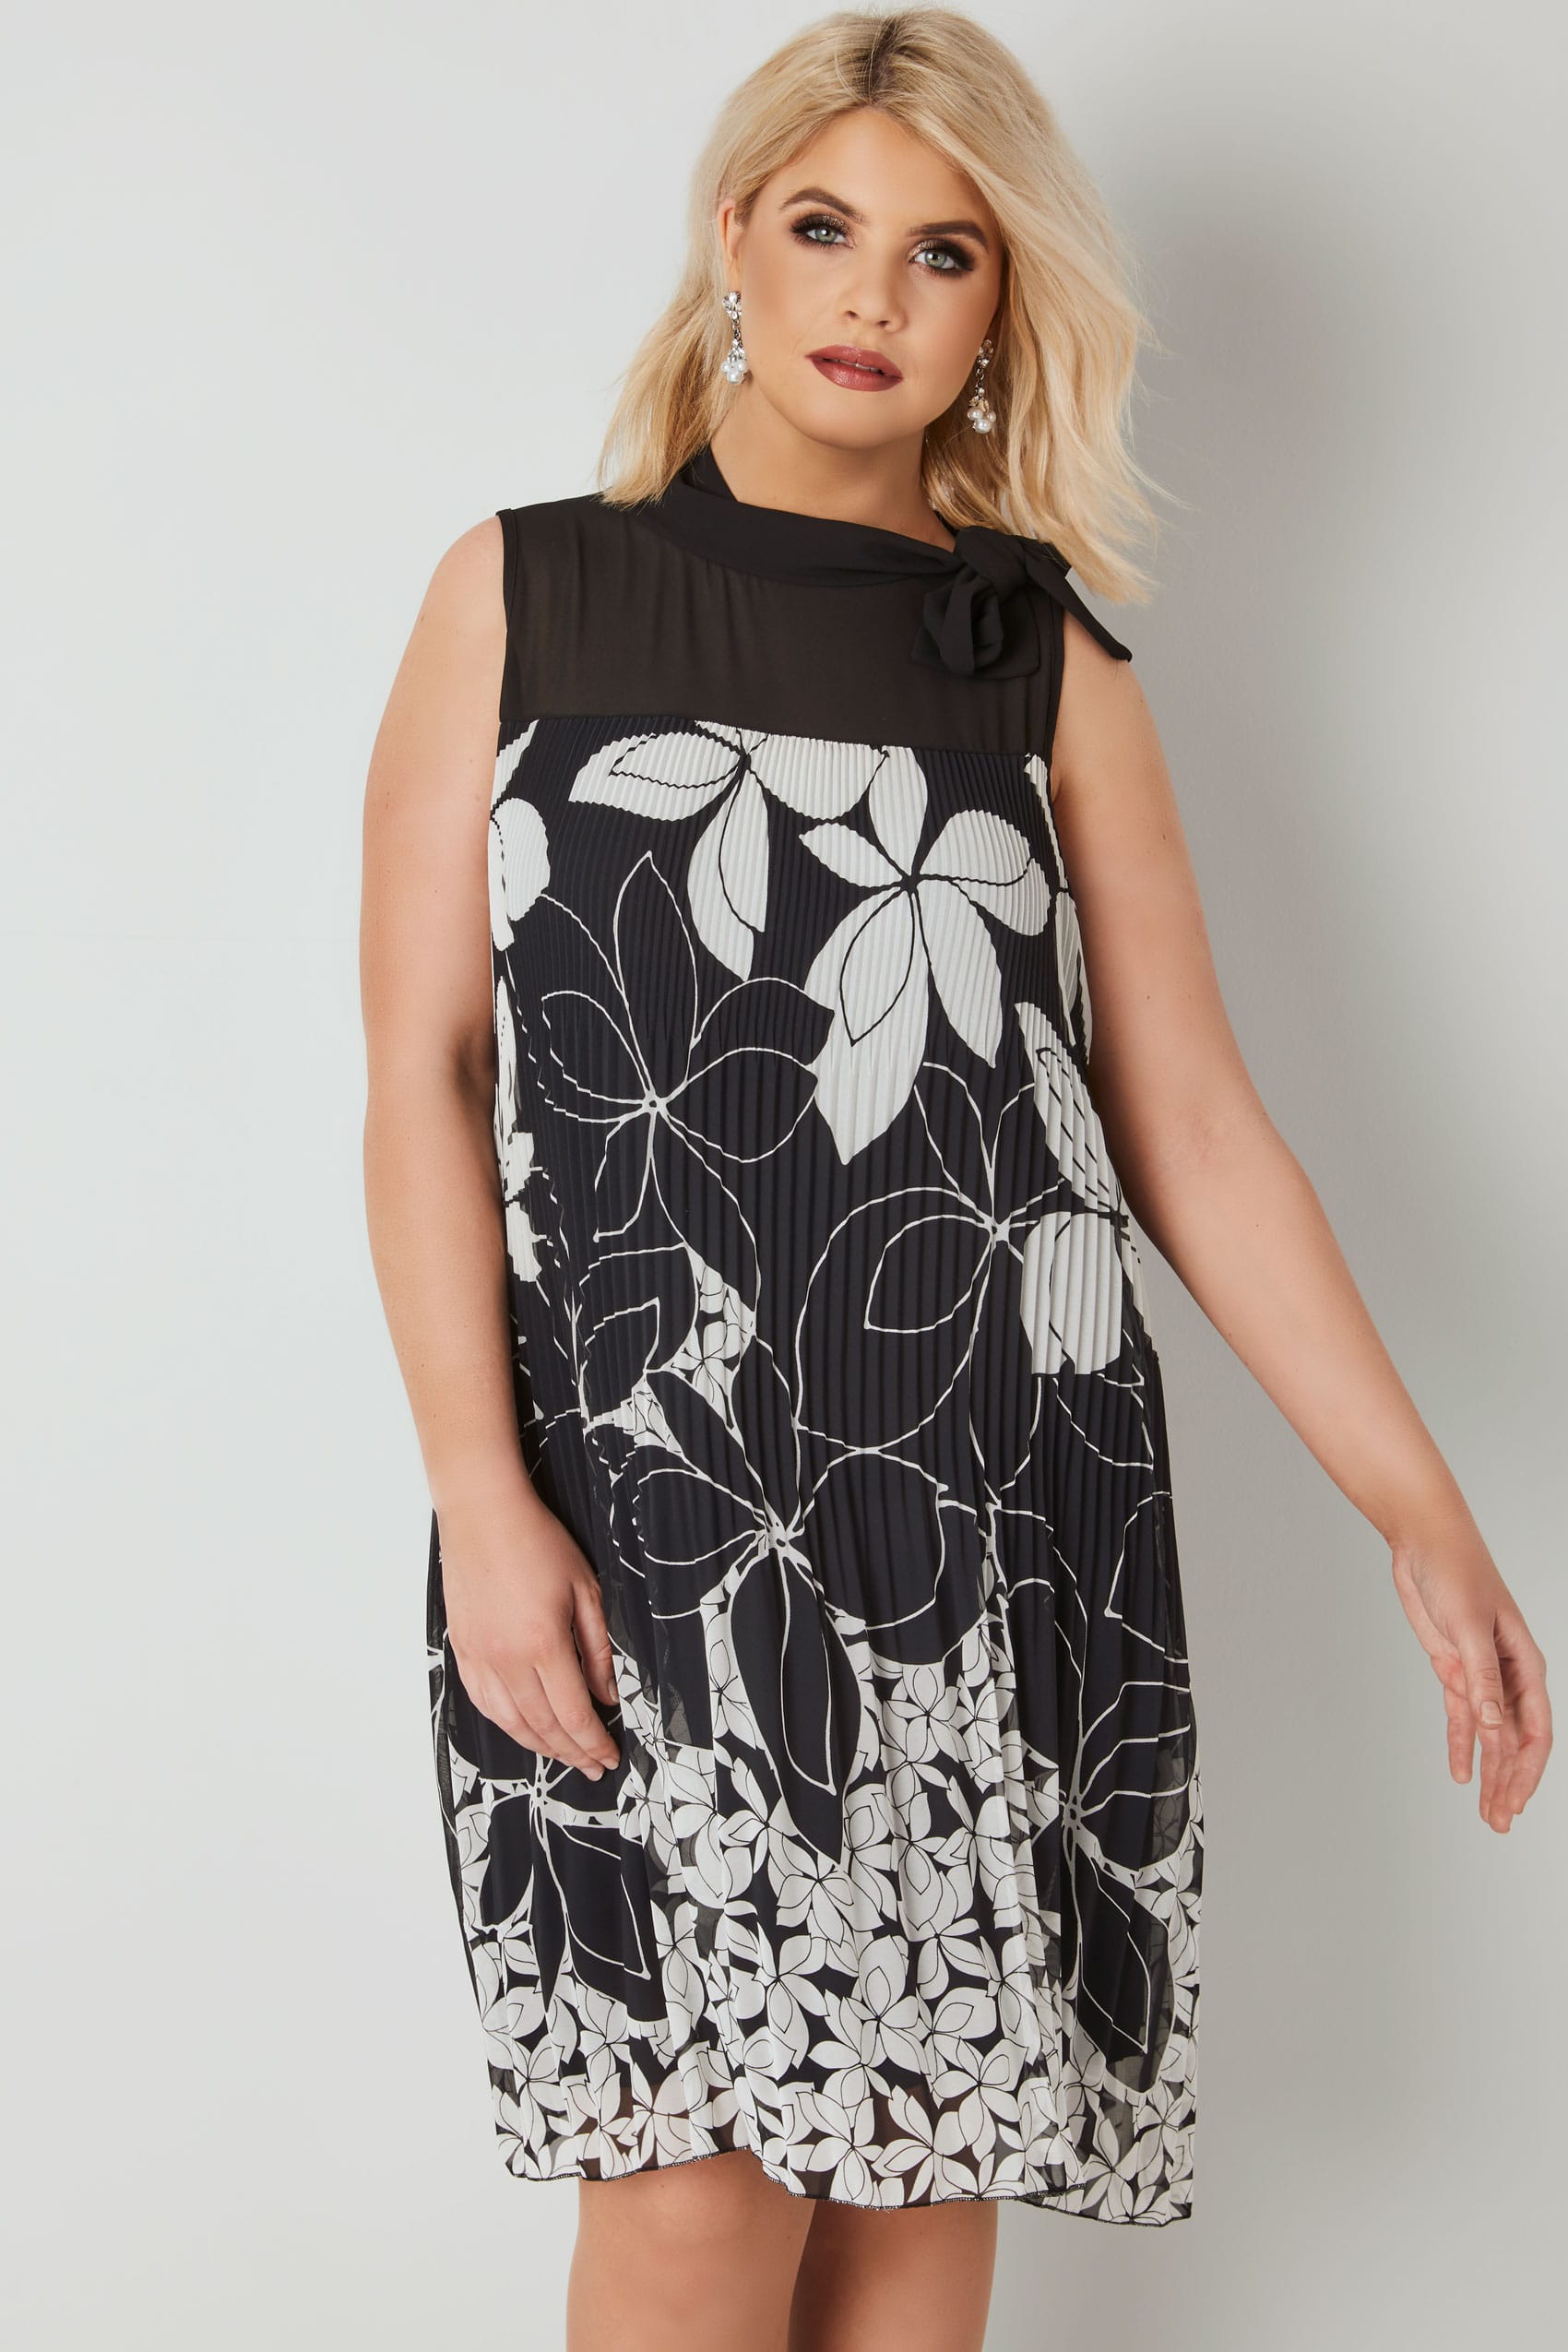 PAPRIKA Black & White Floral Print Plisse Dress, plus size 16 to 26